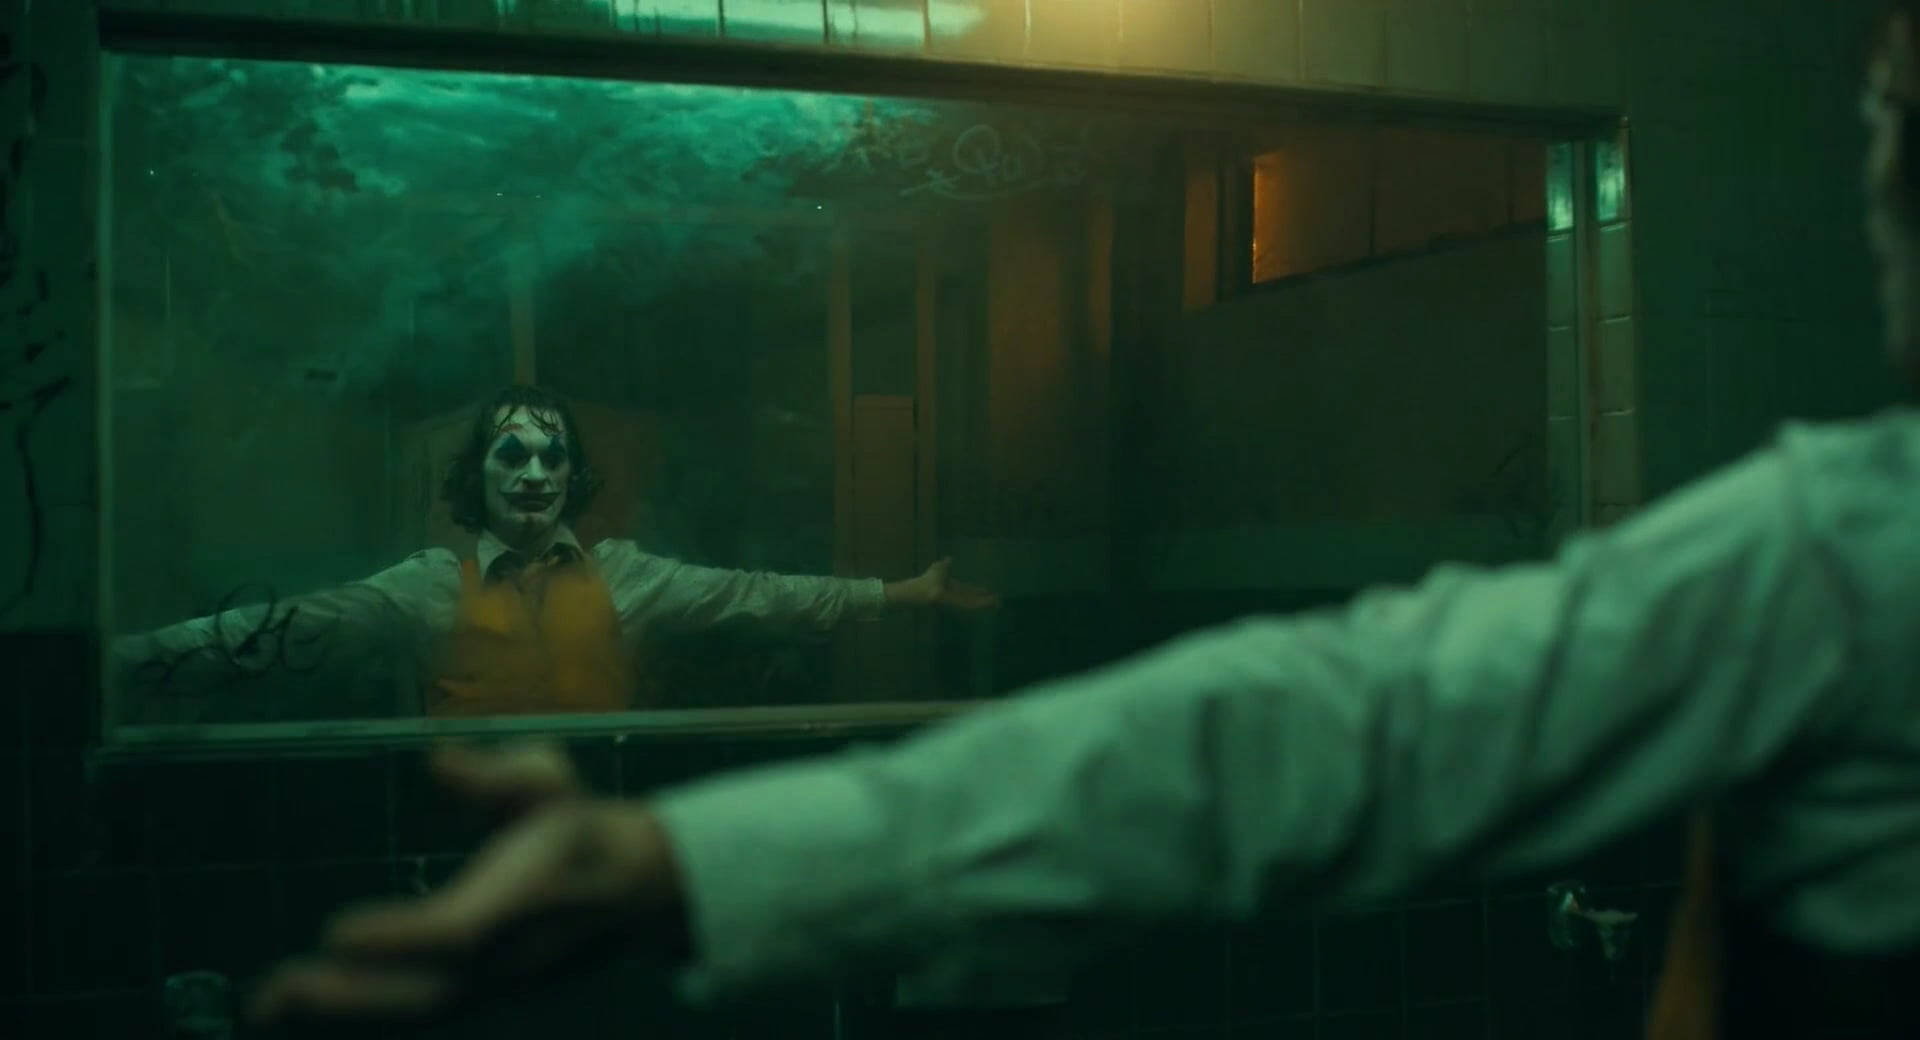 Joker 2020 Staring Into The Mirror Wallpaper